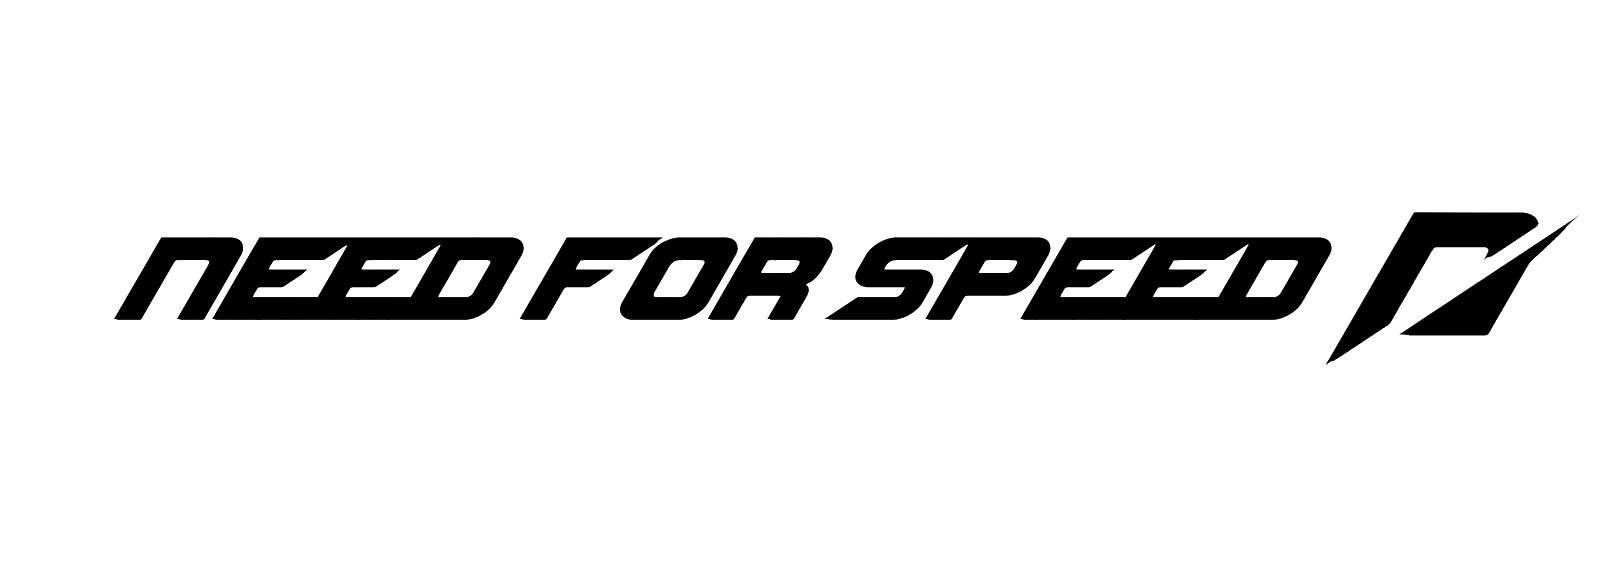 شعار السرعة PNG HD صورة